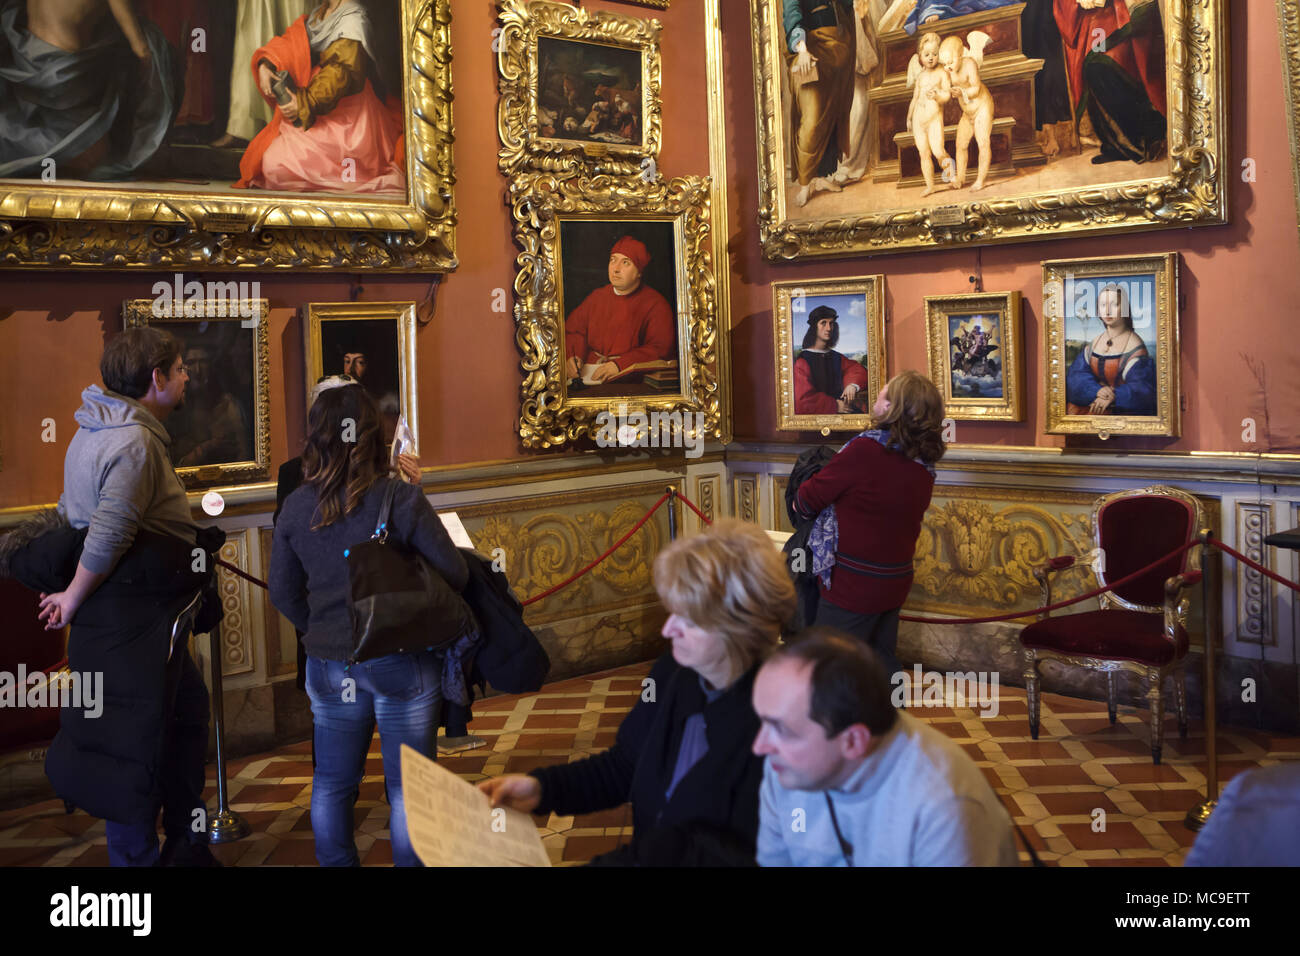 Visiteurs en face de la peinture par peintre italien de la Renaissance Raphaël dans la Galerie Palatine (Galleria Palatina) dans le Palais Pitti à Florence, Toscane, Italie. Banque D'Images